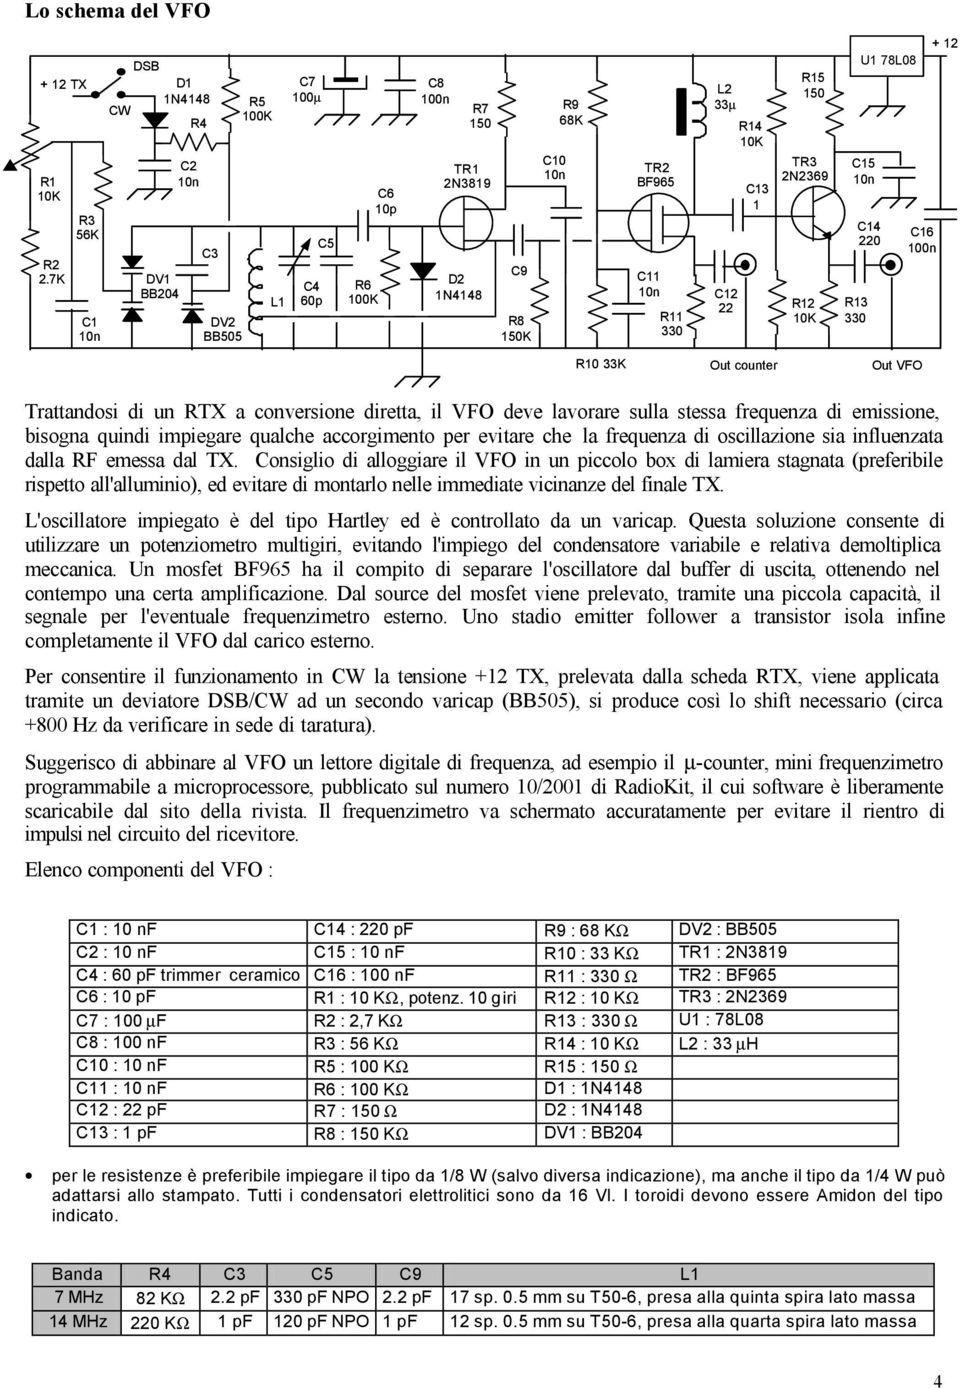 Trattandosi di un RTX a conversione diretta, il VFO deve lavorare sulla stessa frequenza di emissione, bisogna quindi impiegare qualche accorgimento per evitare che la frequenza di oscillazione sia